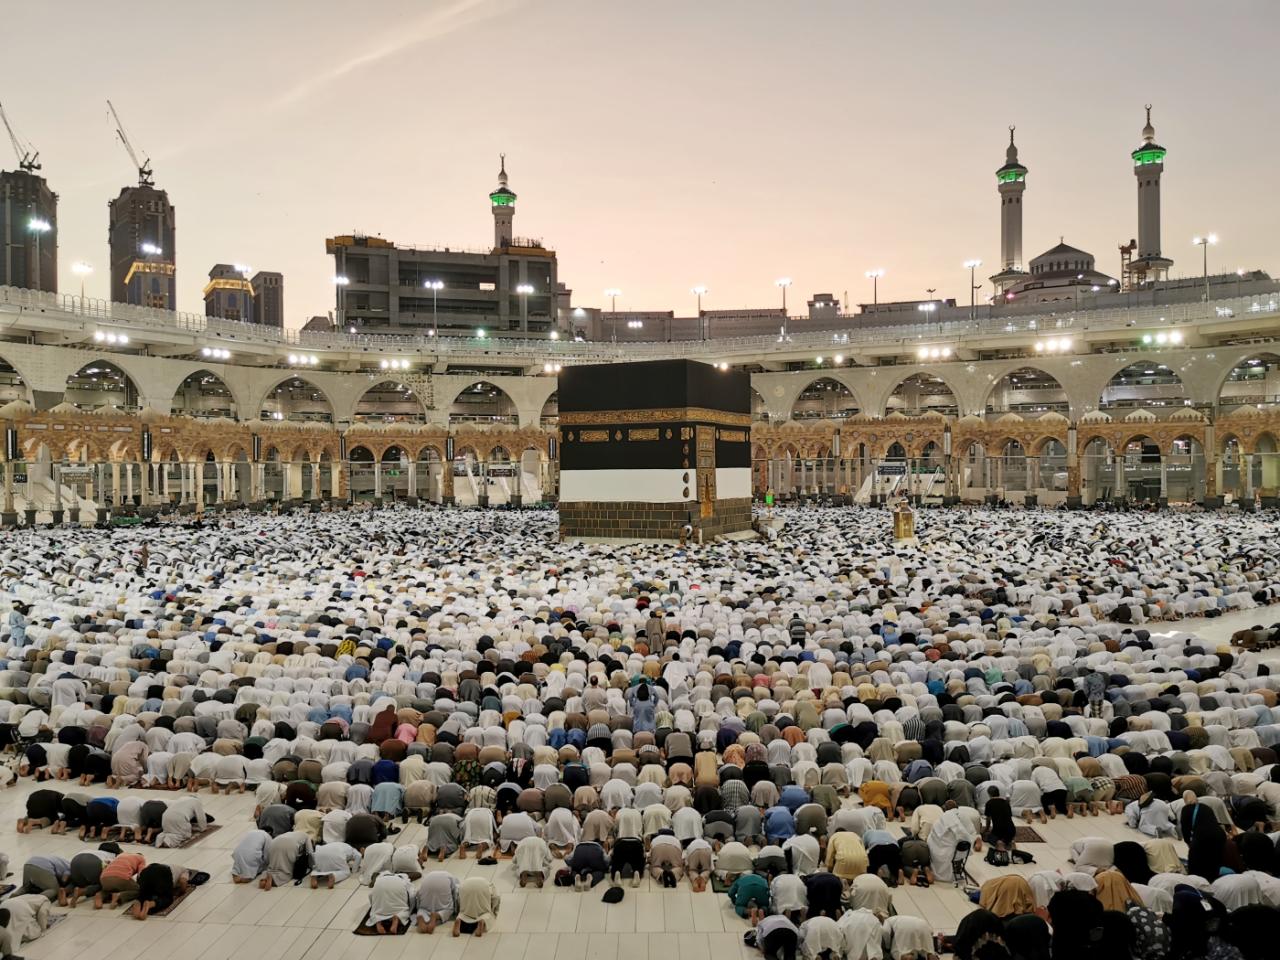 Hajj mecca pilgrimage muslims pillar afp begin cgtn fanack boycotting crimes pilgrims topteny fethi belaid cbc